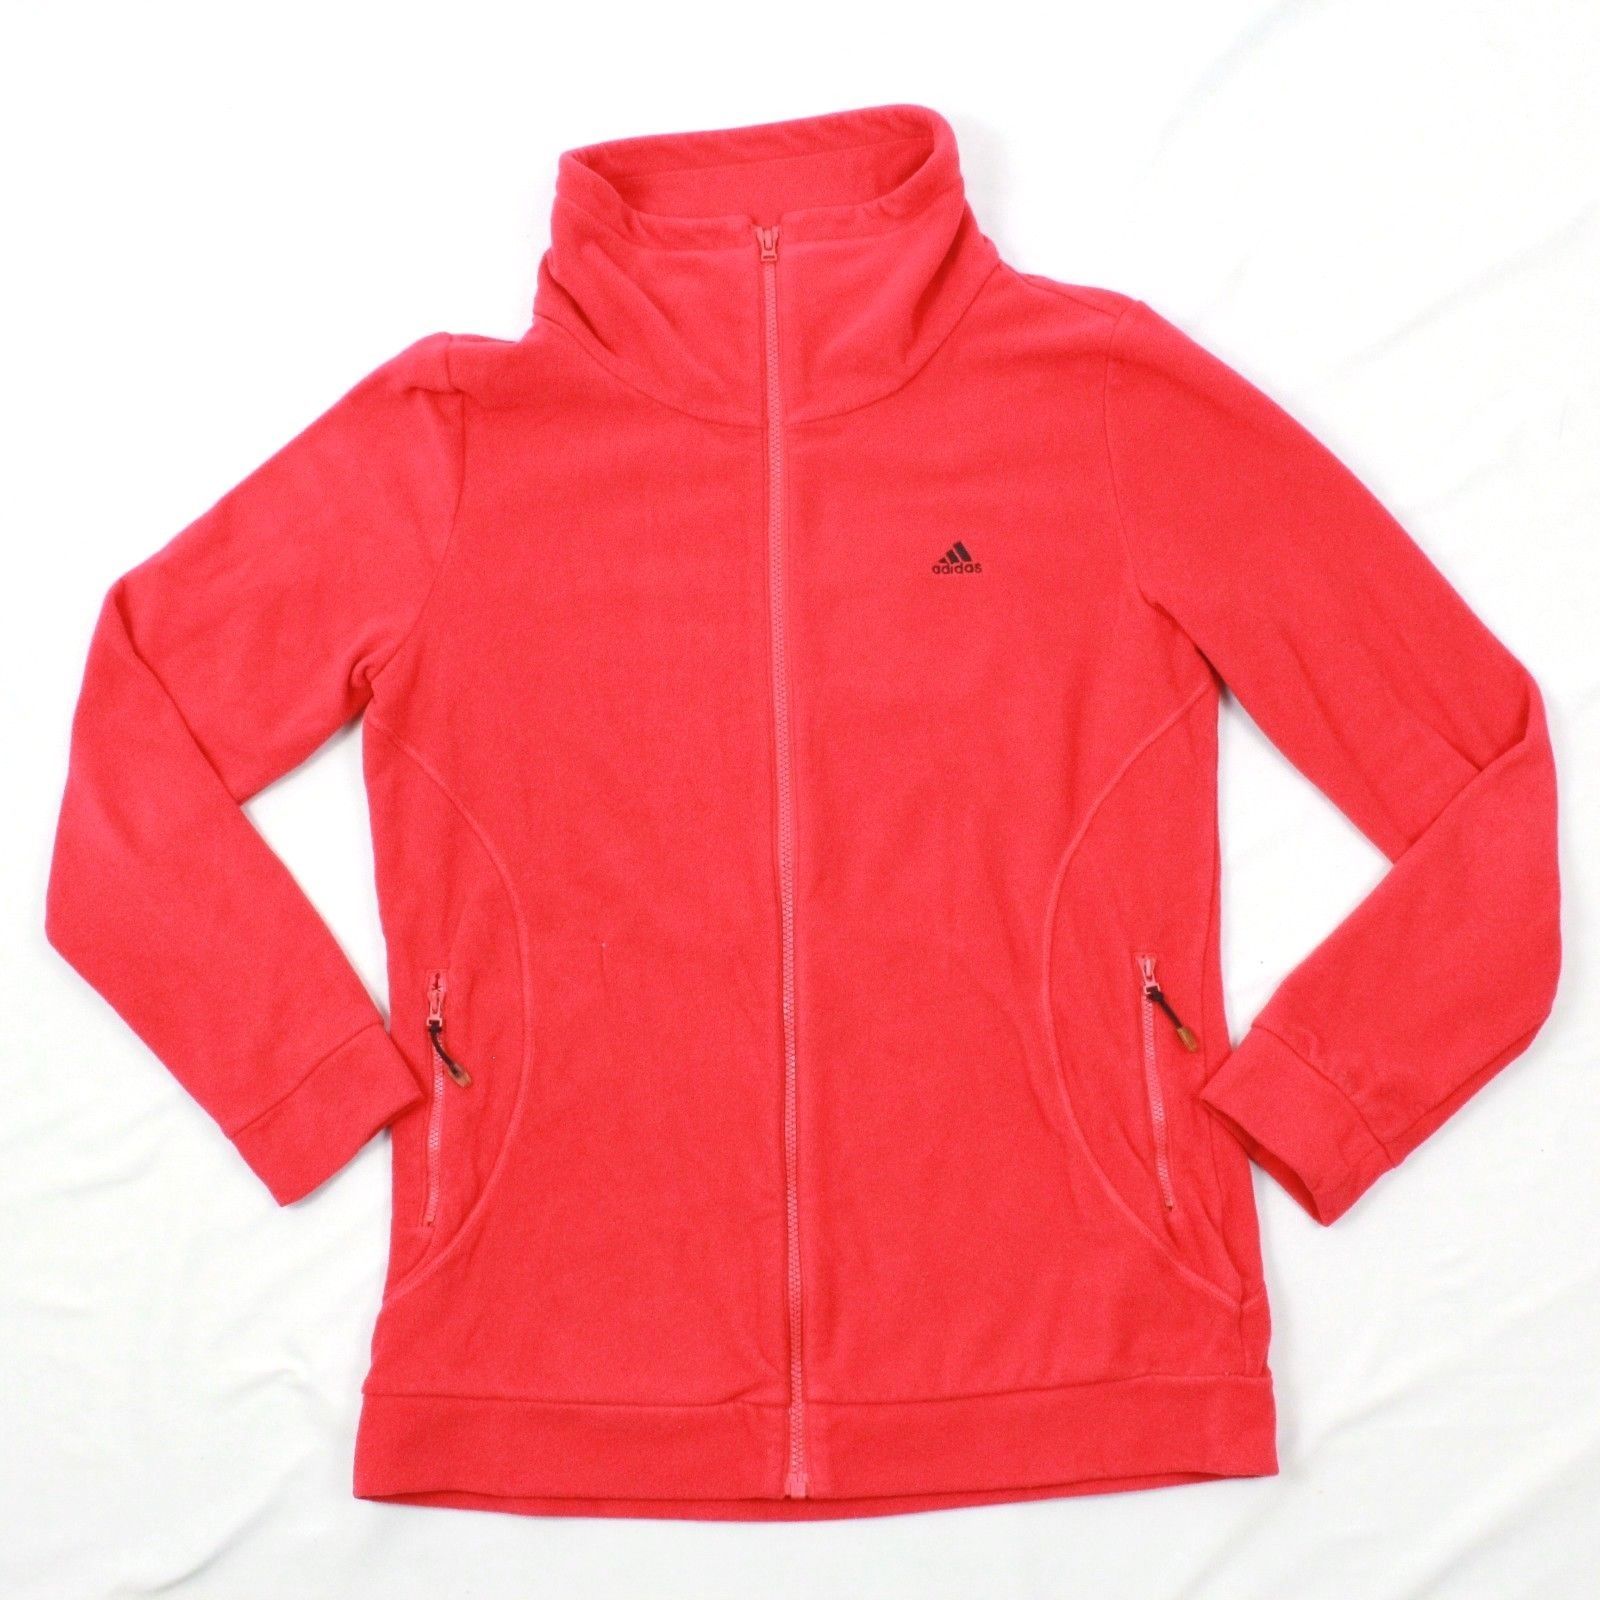 Adidas Men Fleece Jacket Red Full Zip Turtleneck Size L Adult Active ...